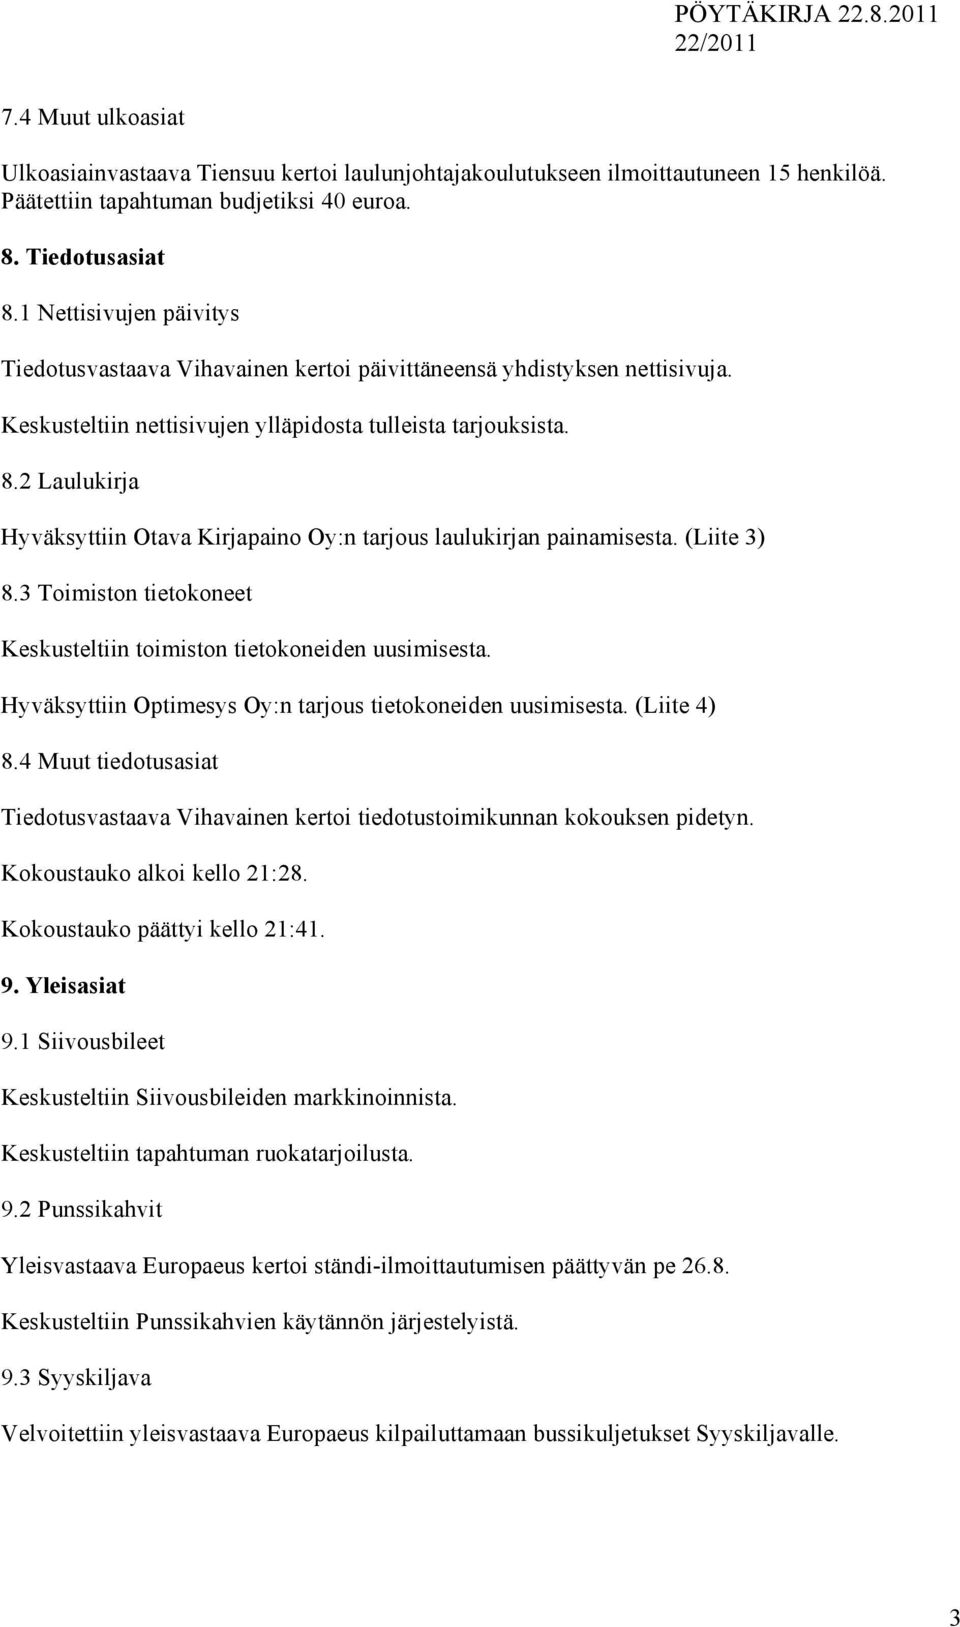 2 Laulukirja Hyväksyttiin Otava Kirjapaino Oy:n tarjous laulukirjan painamisesta. (Liite 3) 8.3 Toimiston tietokoneet Keskusteltiin toimiston tietokoneiden uusimisesta.